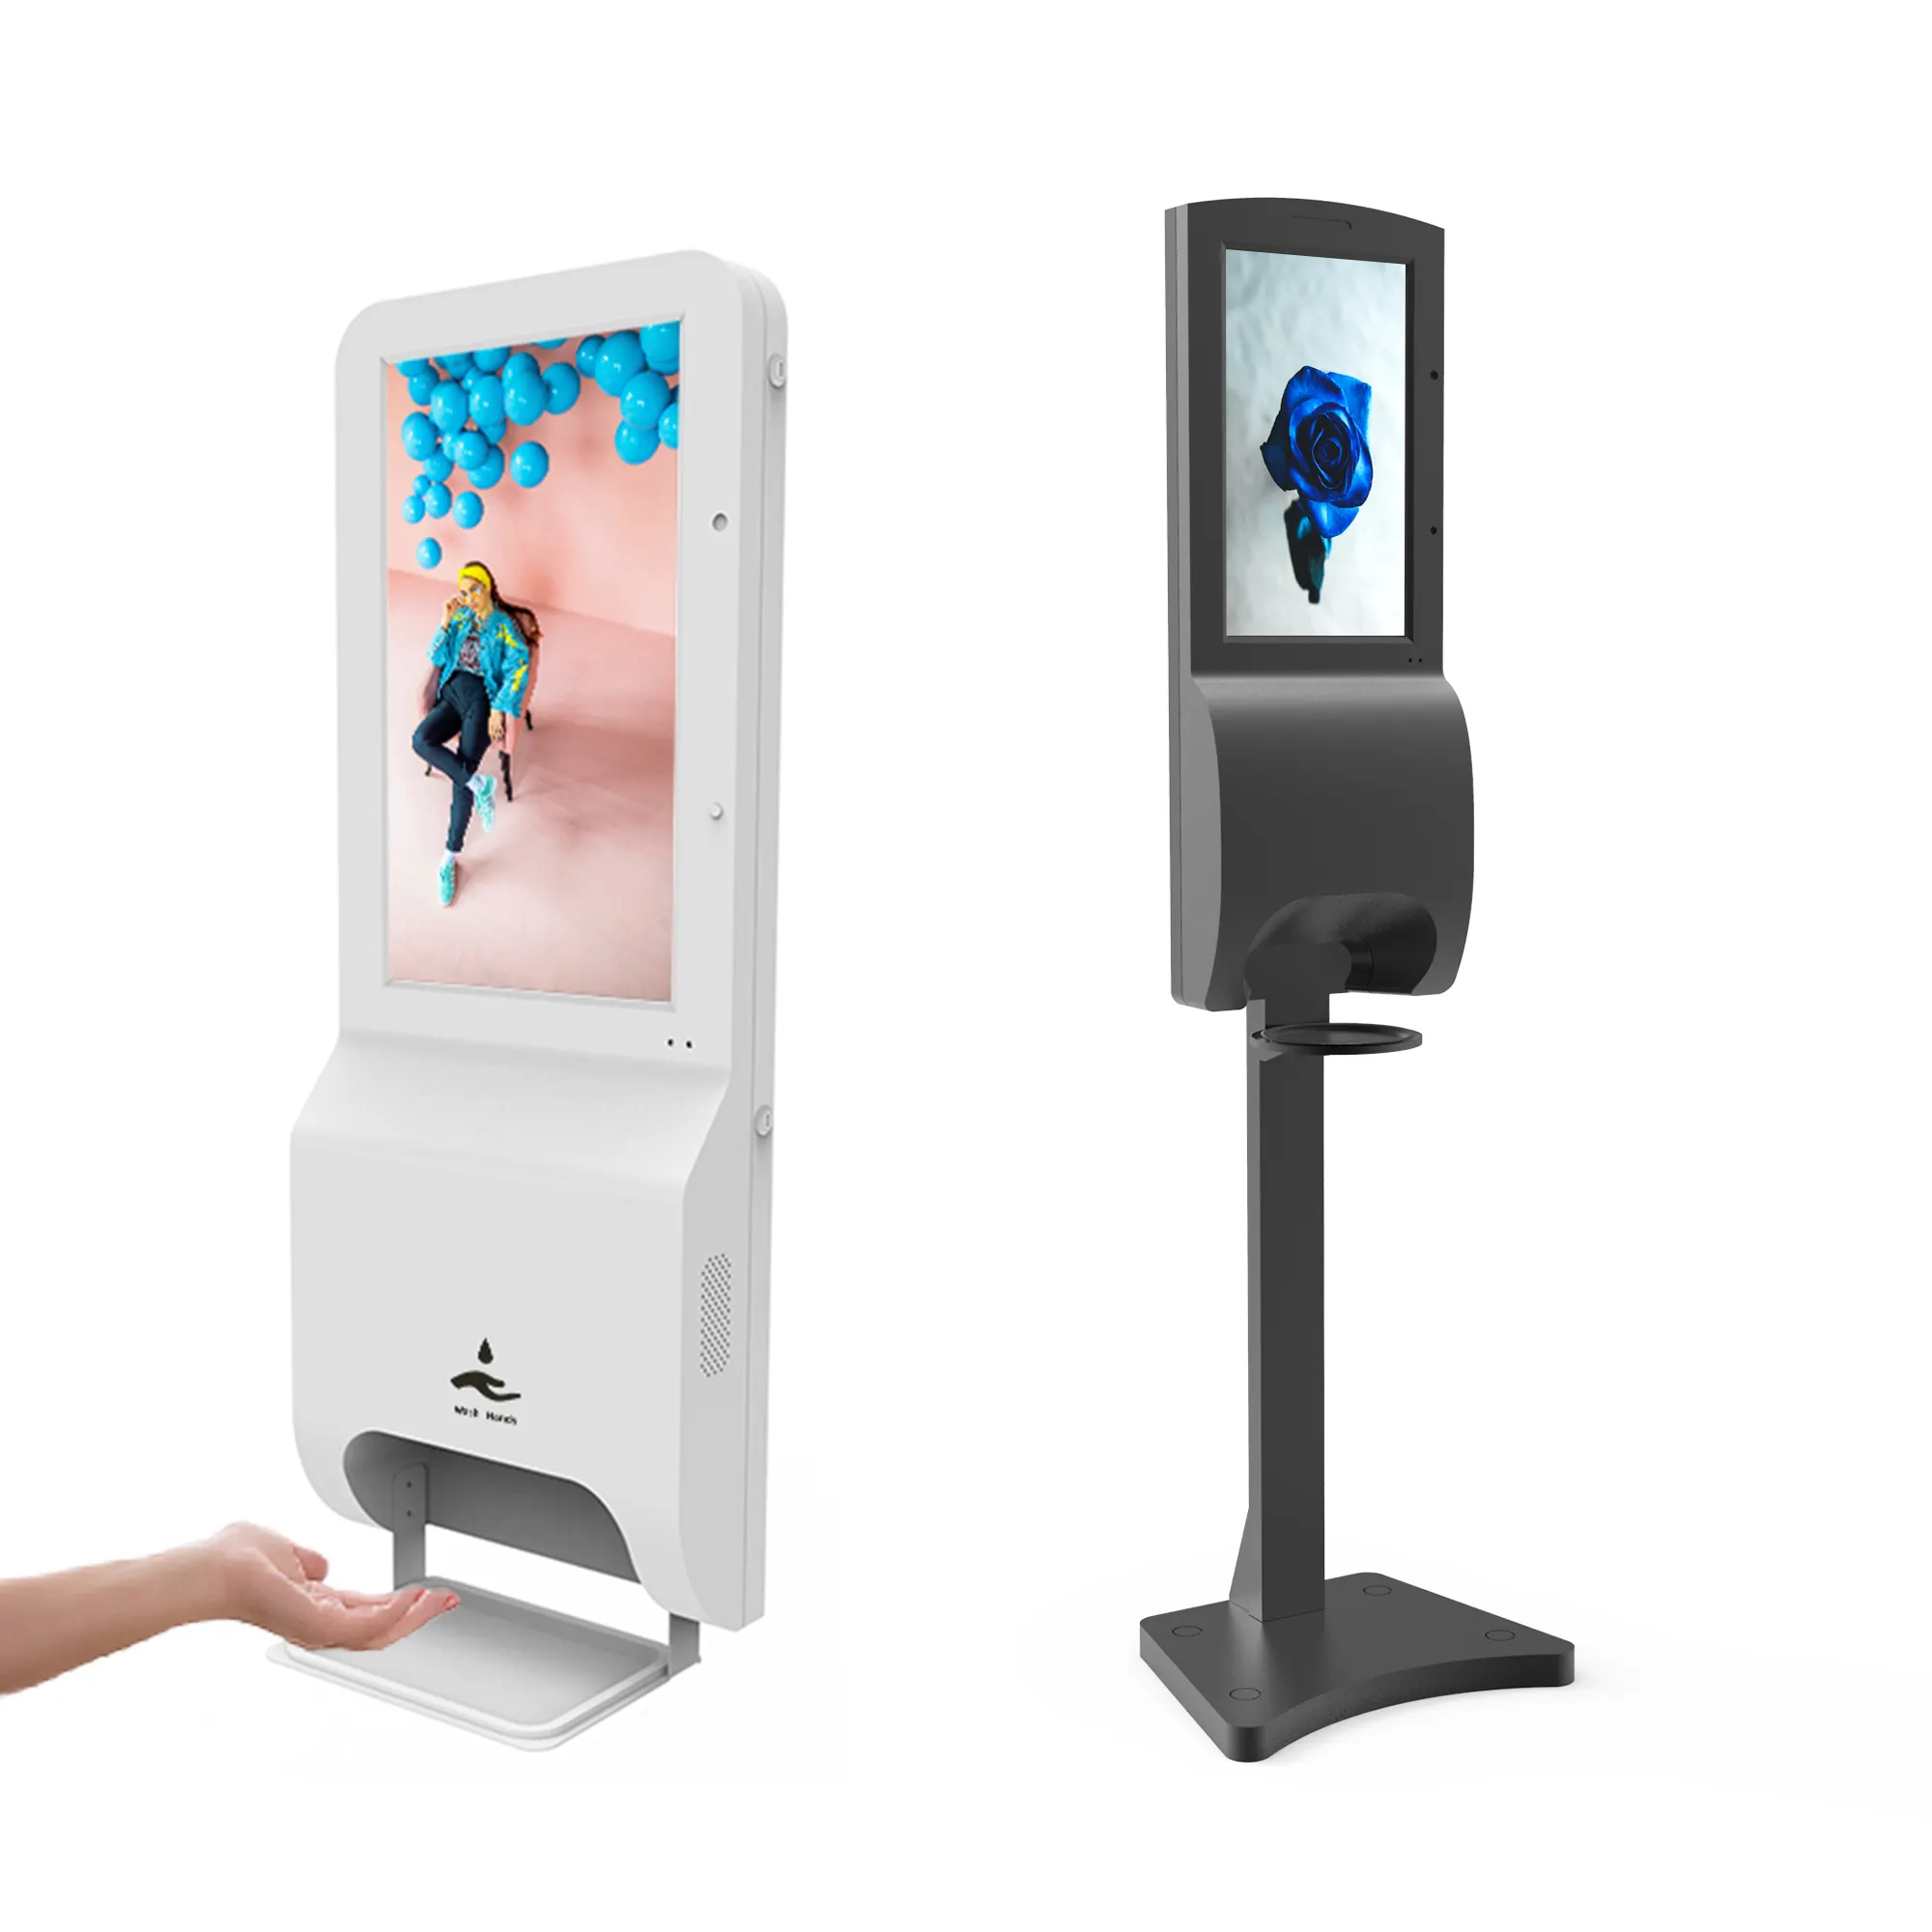 Layar LCD hd berdiri iklan kios pemutar media android digital sigage dengan pembersih tangan dispenser